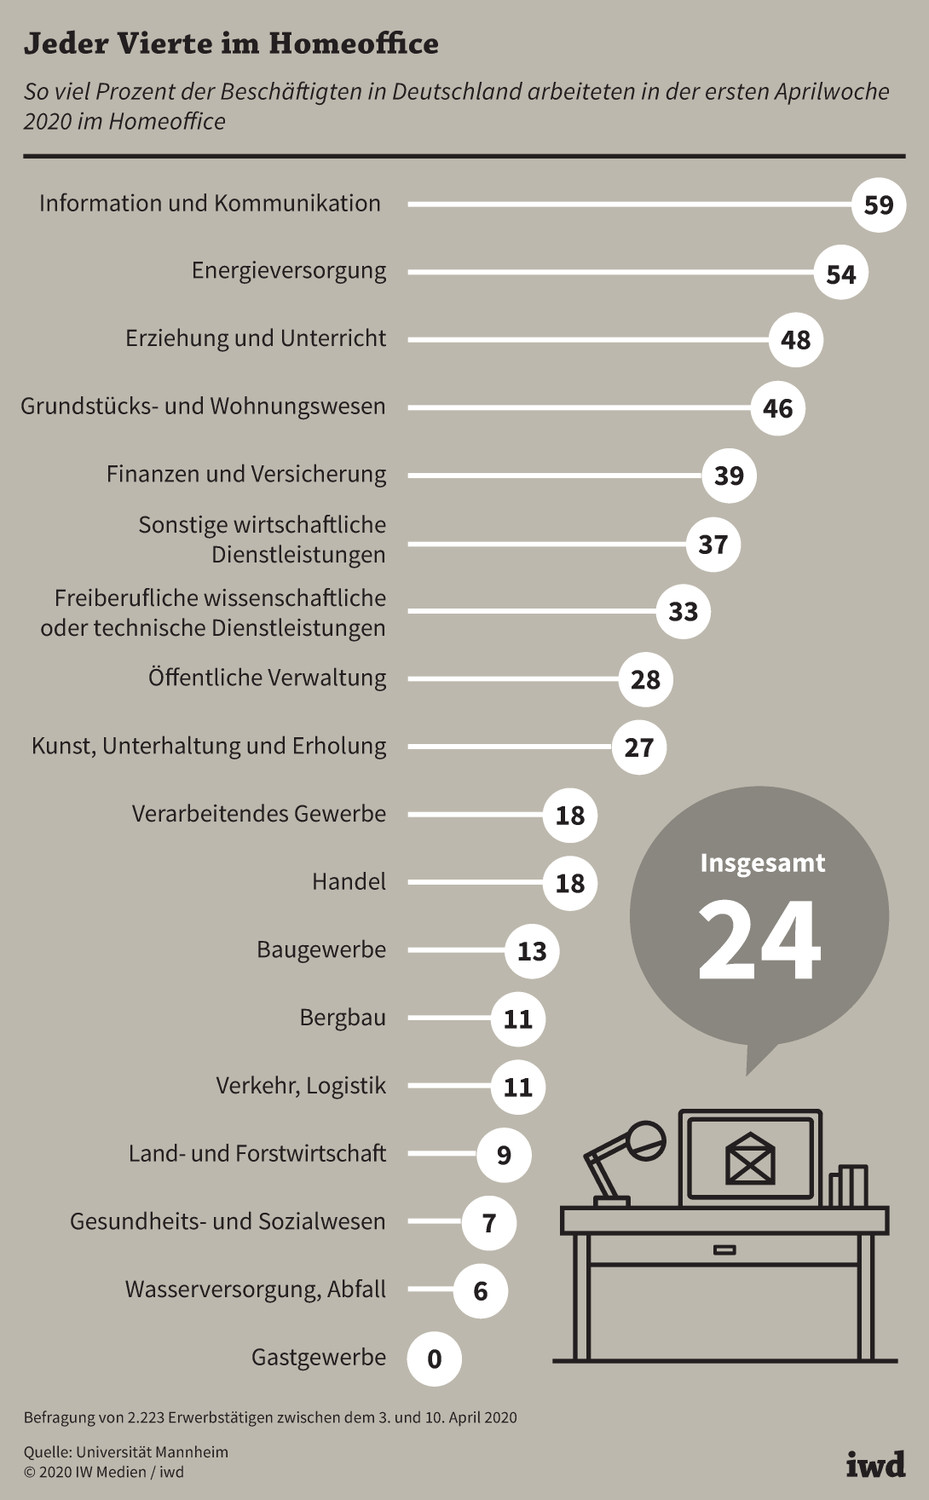 So viel Prozent der Beschäftigten in Deutschland arbeiteten in der ersten Aprilwoche 2020 im Homeoffice